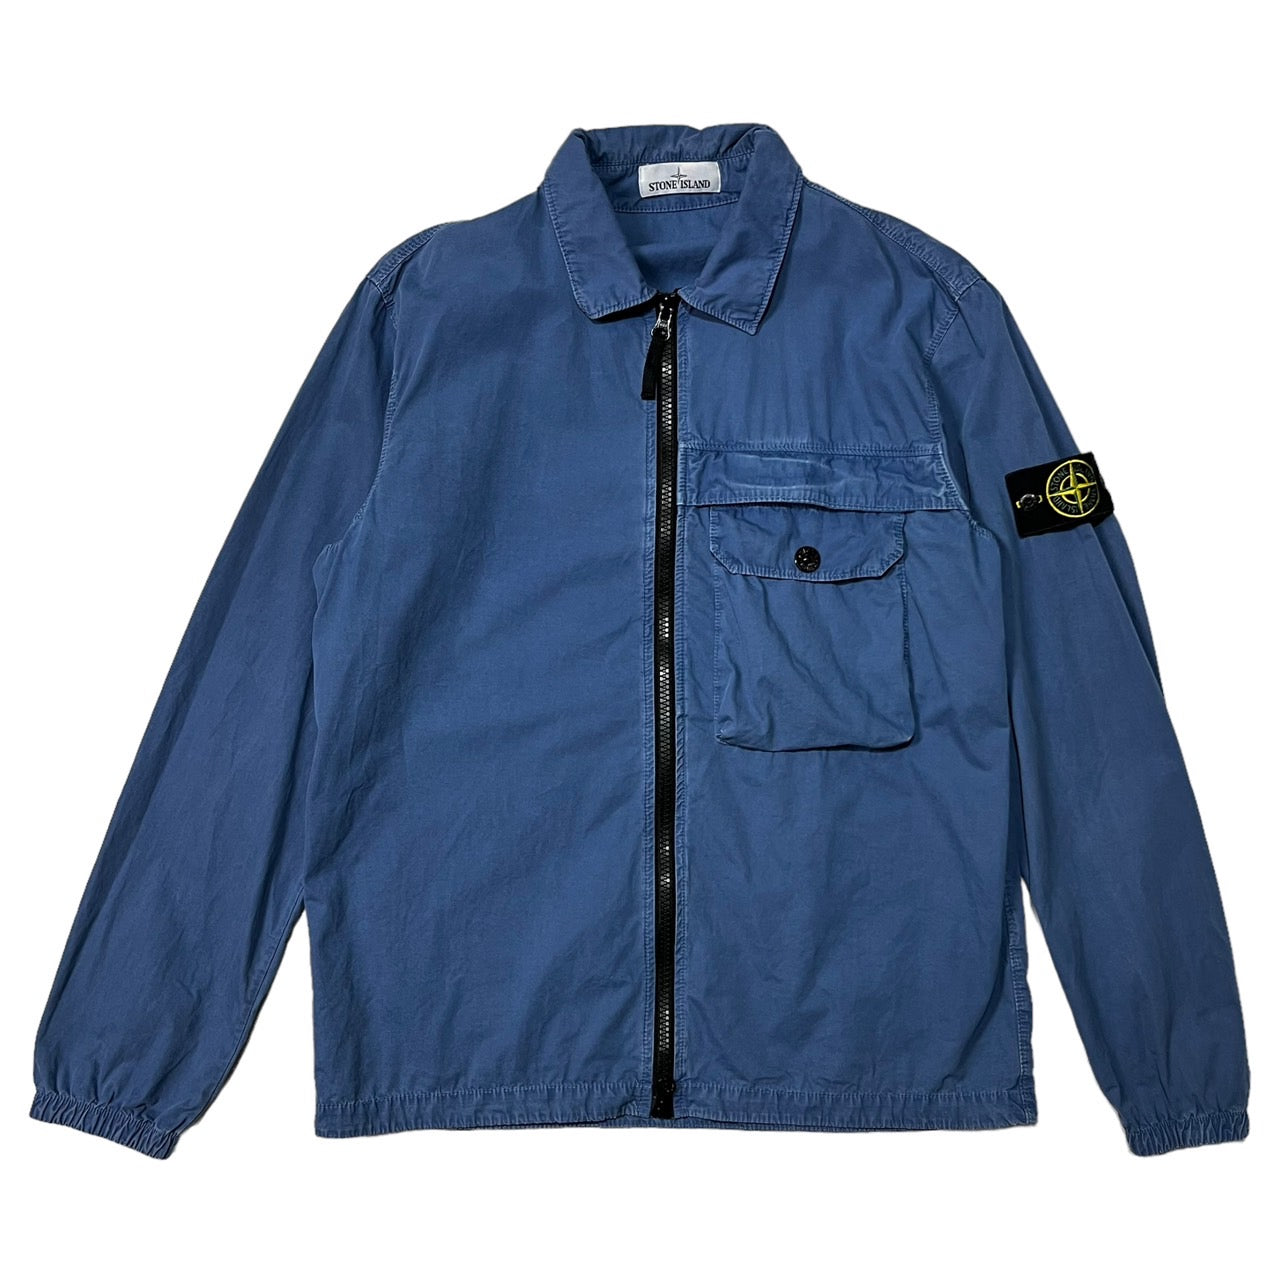 STONE ISLAND(ストーンアイランド) 20AW garment-dyed zip-up jacket ガーメントダイ ジップアップ  ジャケット 7315107WN SIZE L ブルー